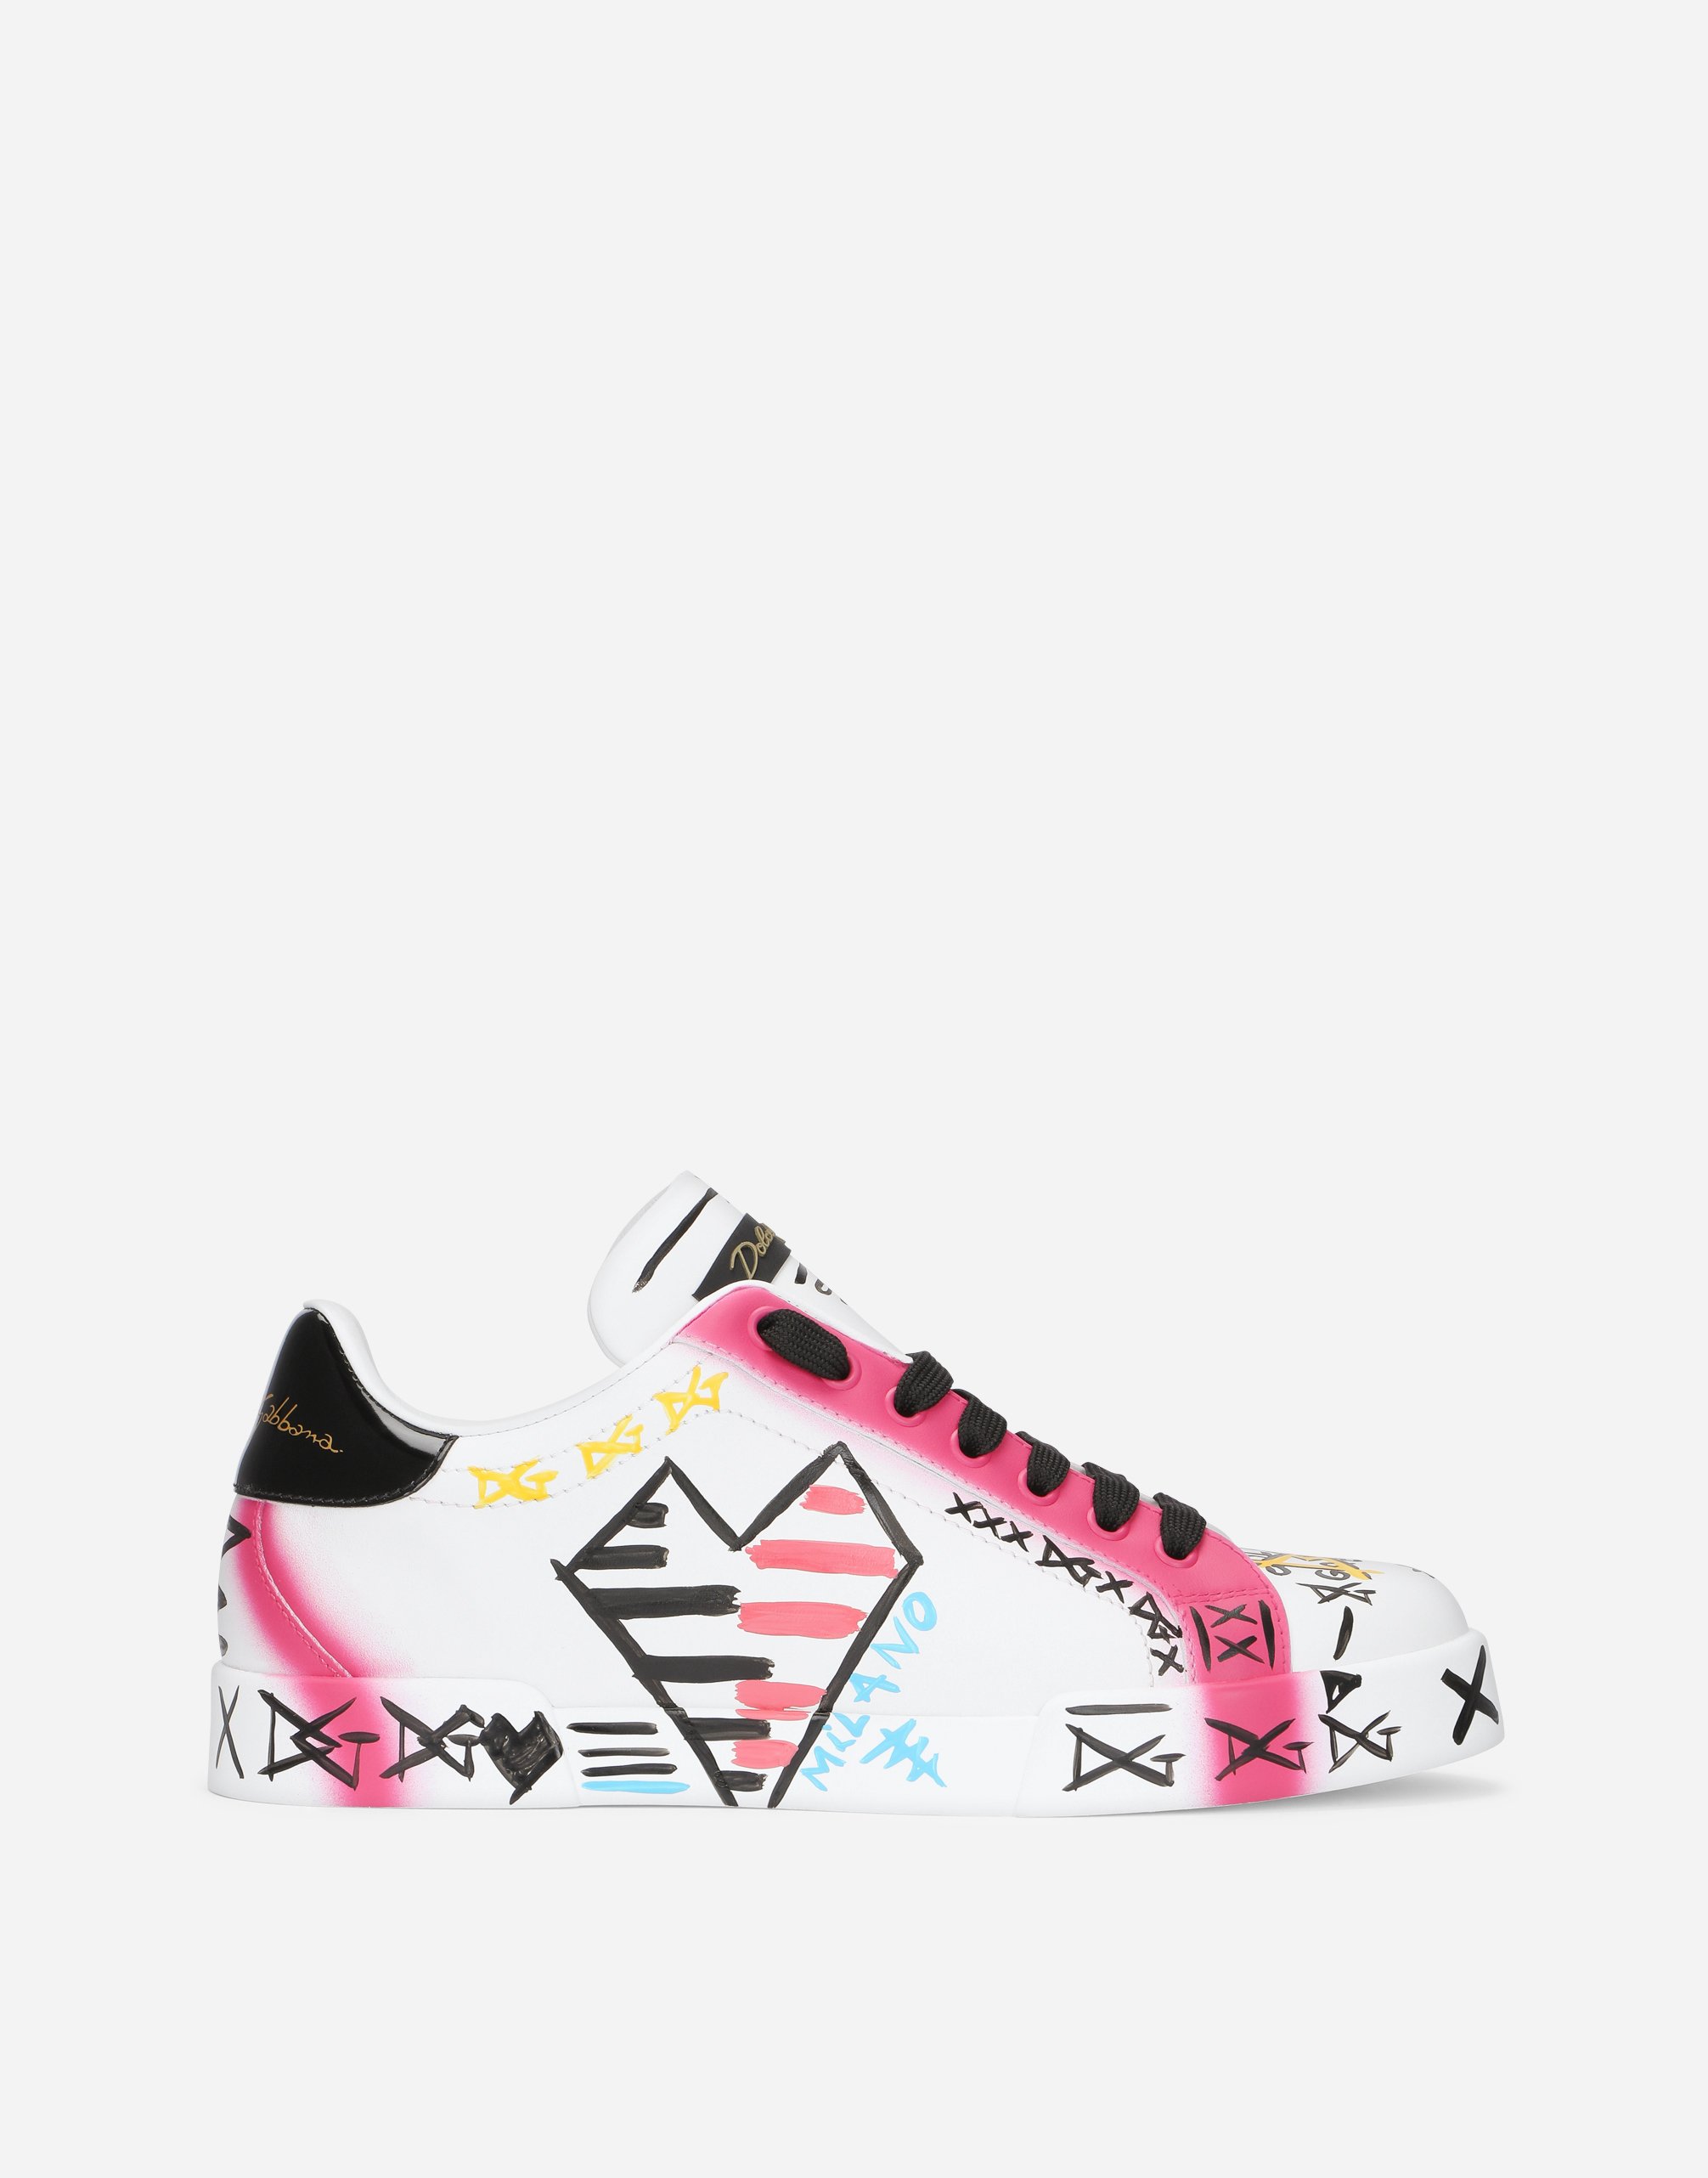 Limited edition Portofino sneakers in Multicolor